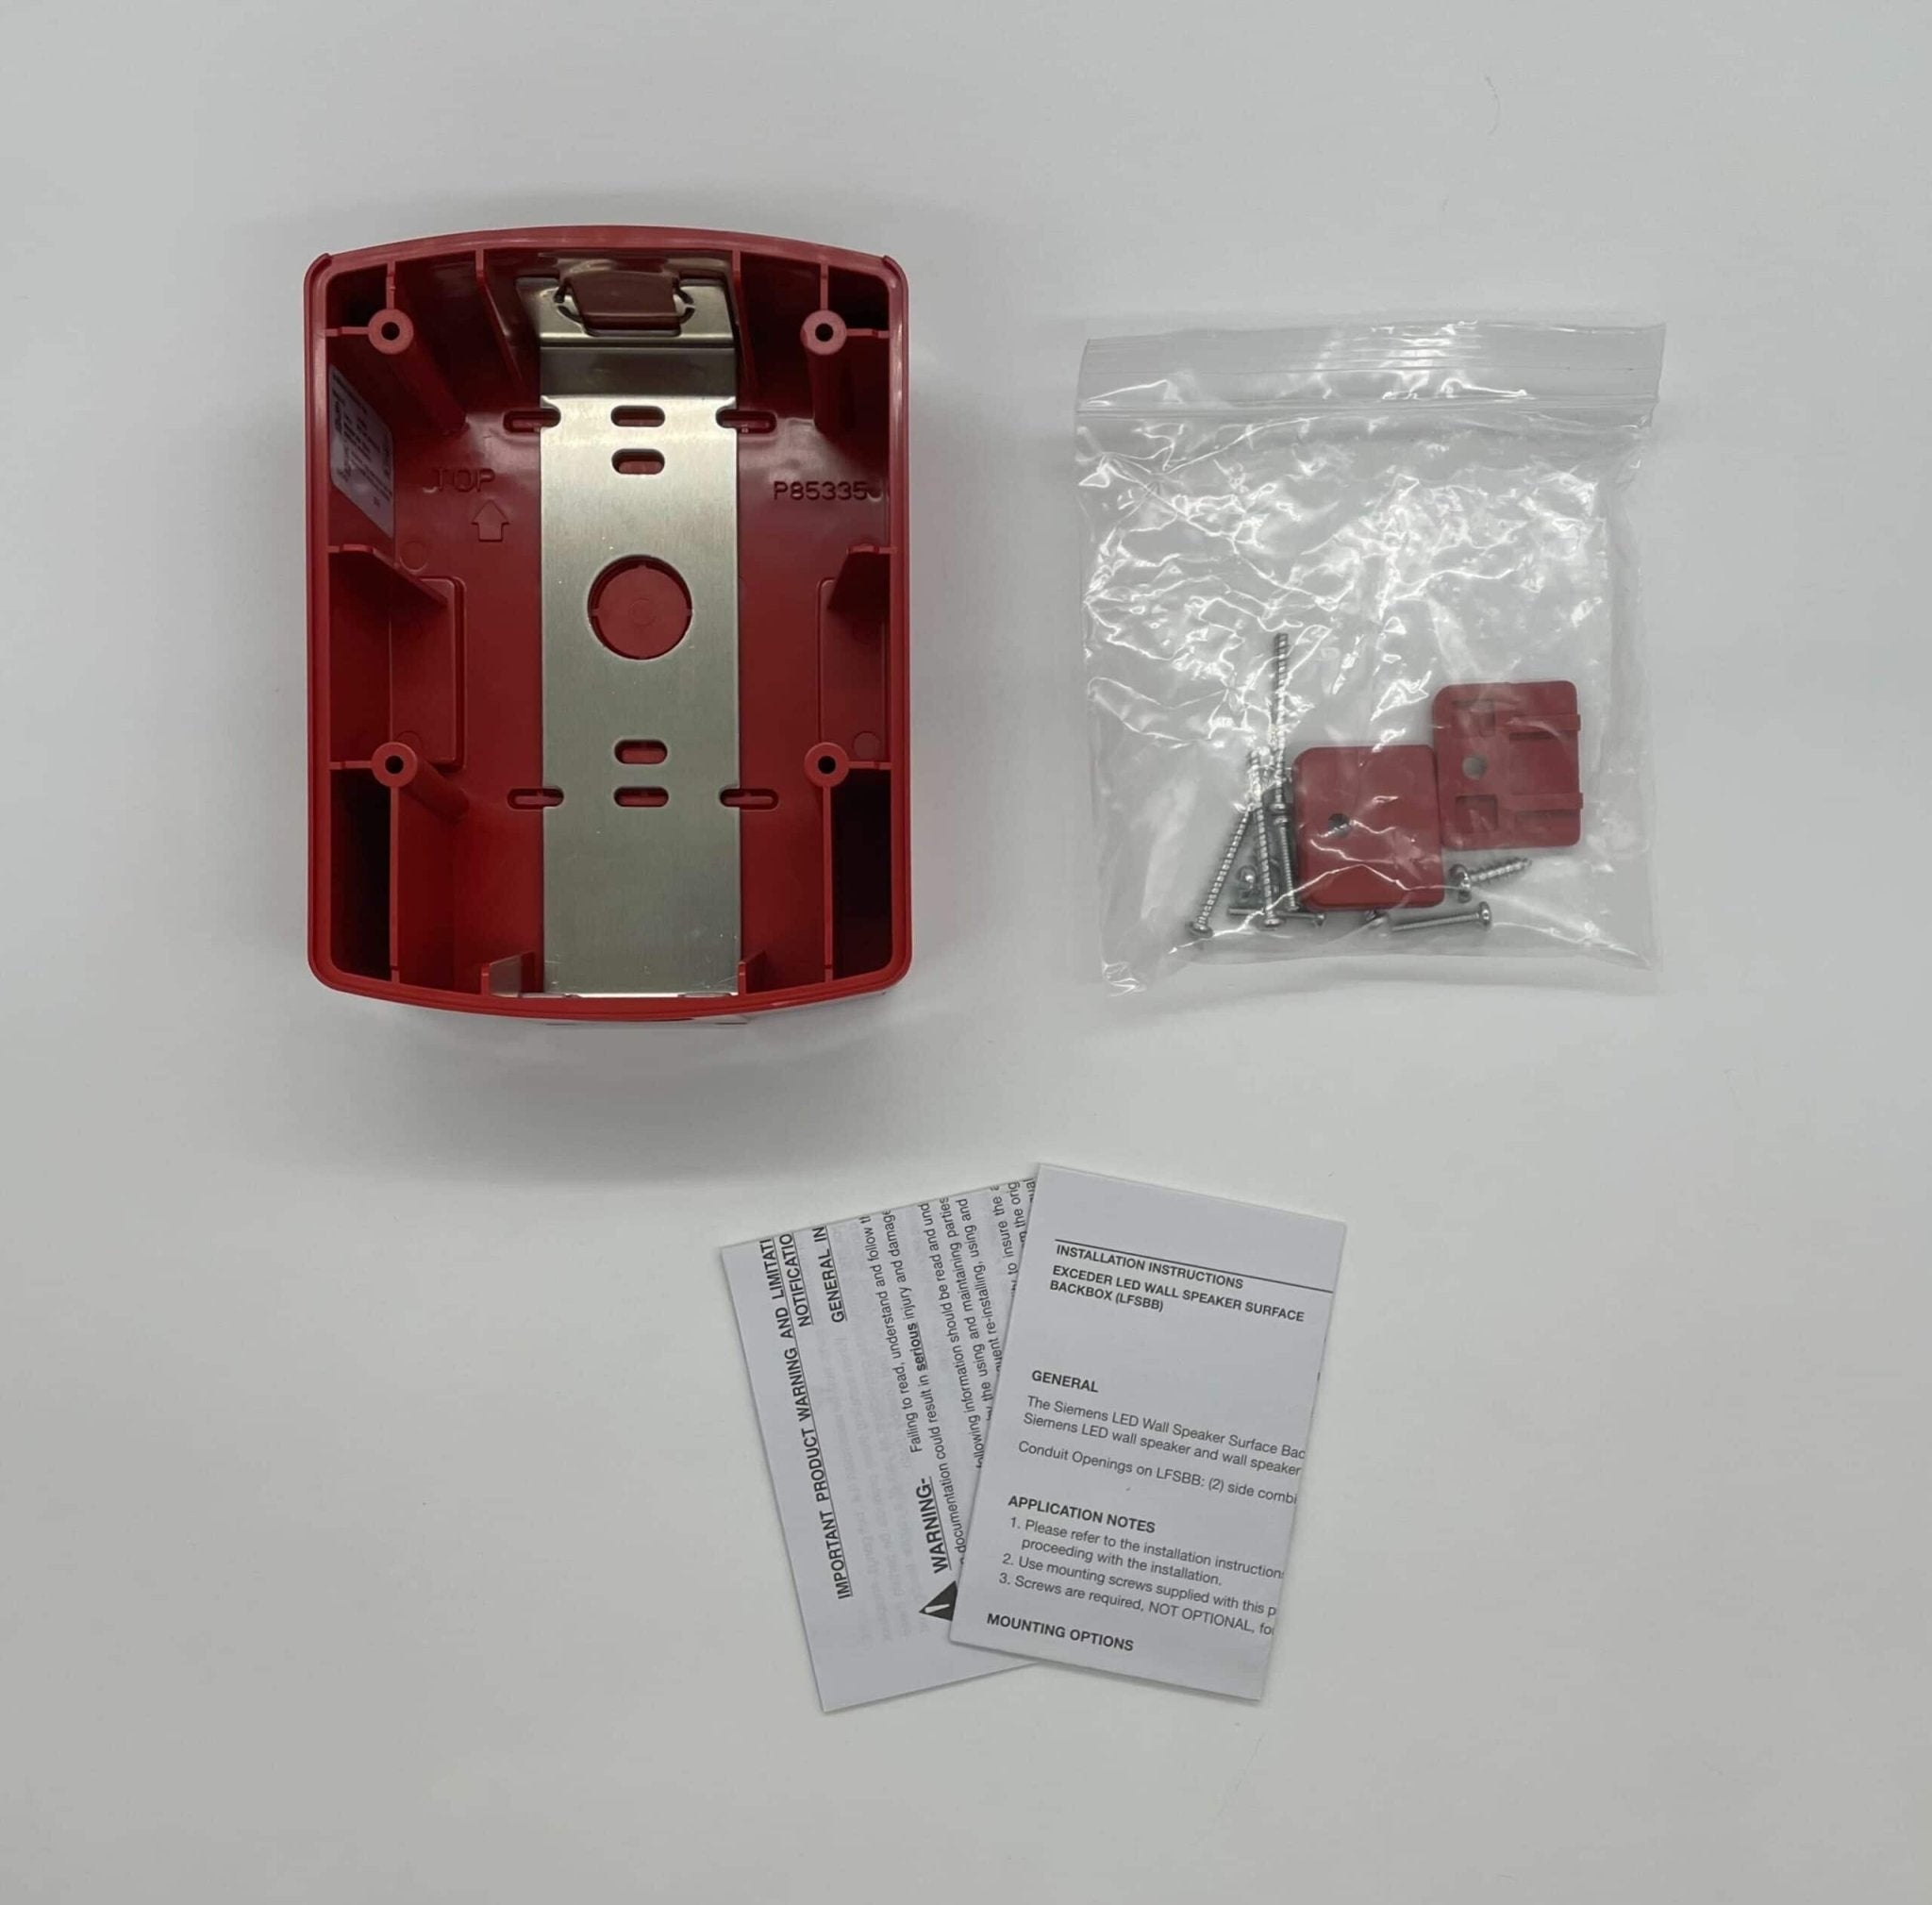 Siemens LFSBB-R - The Fire Alarm Supplier